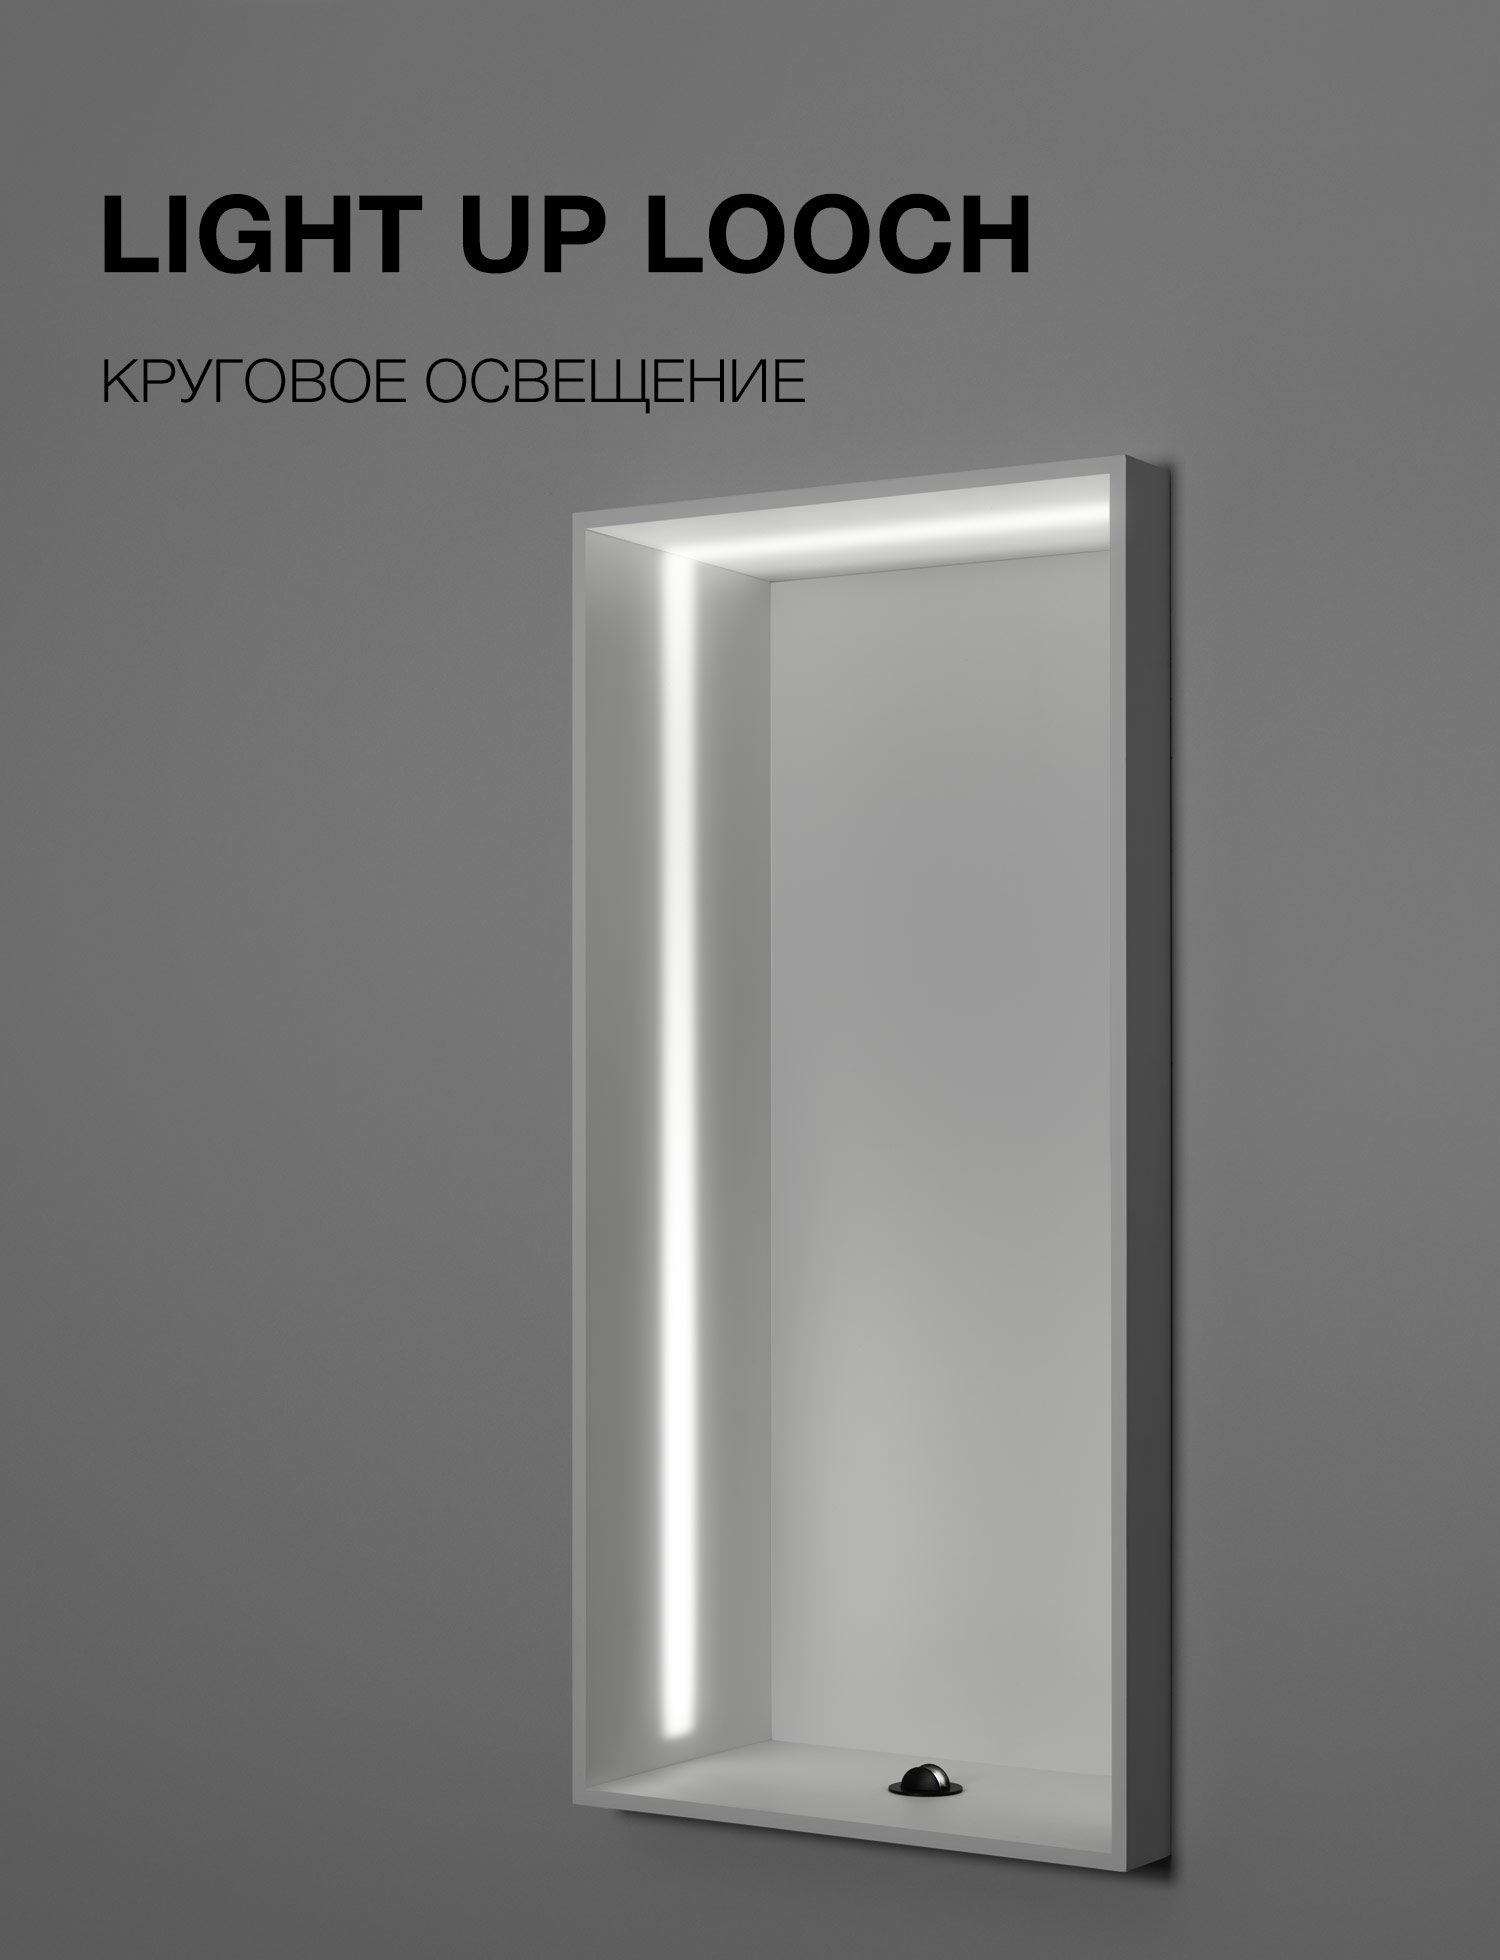 LIGHT UP LOOCH